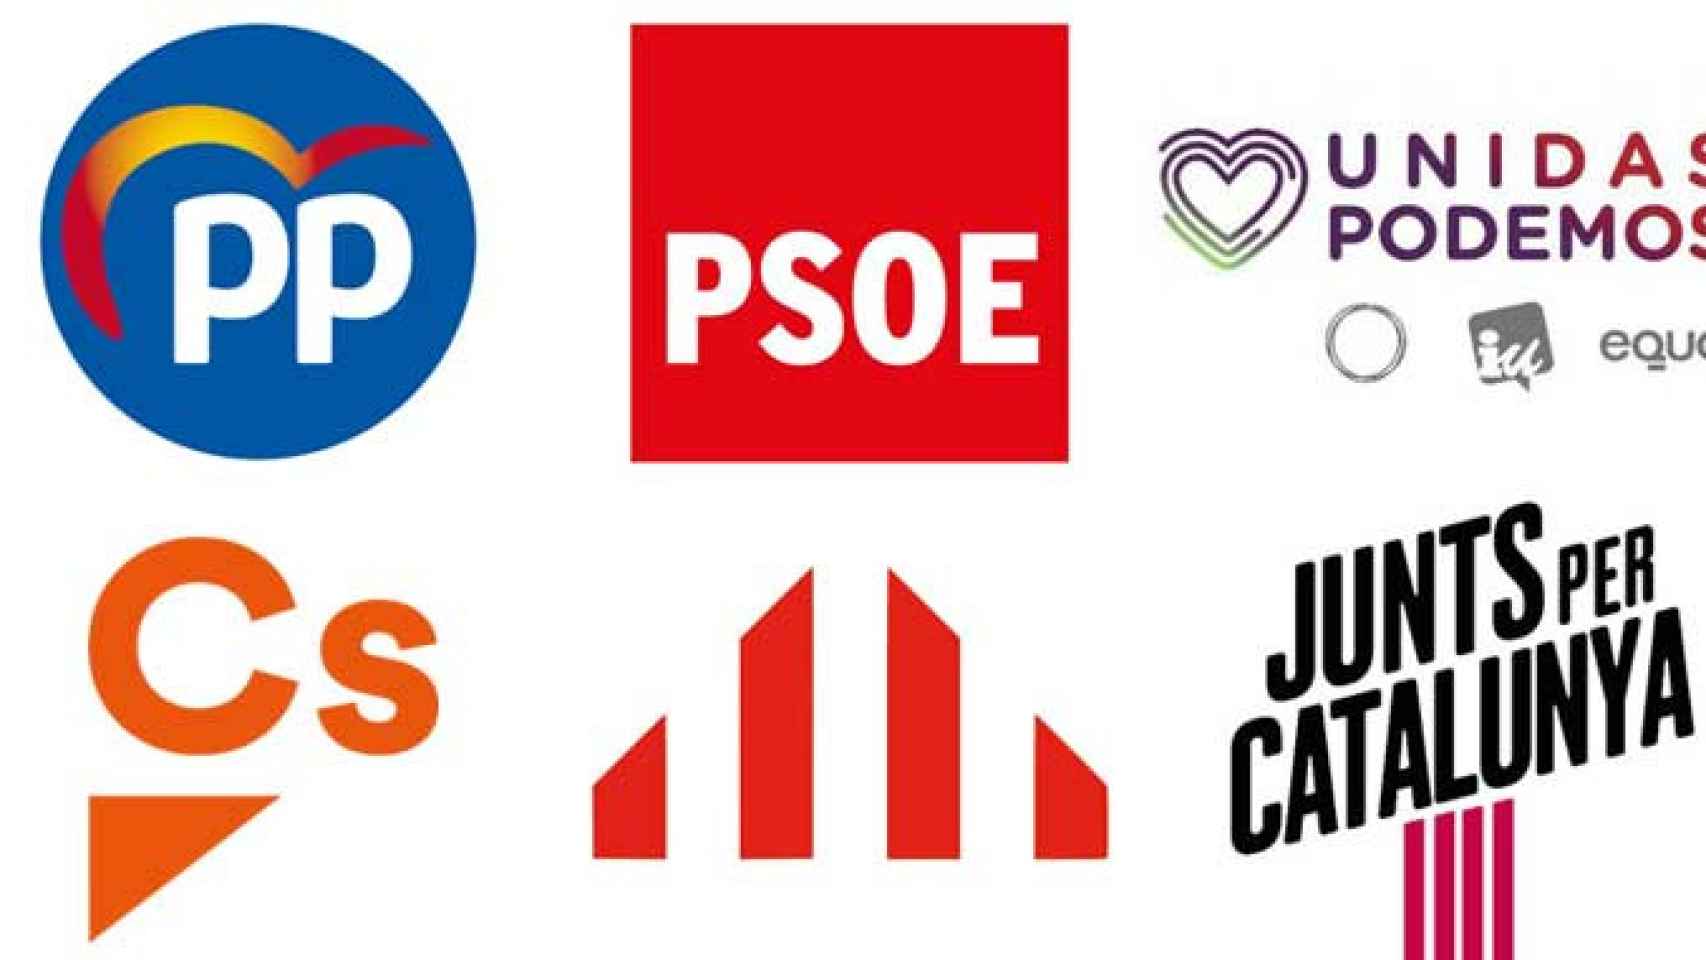 Logos de PP, PSOE, Unidas Podemos, Ciudadanos, ERC y Junts per Catalunya, principales partidos políticos de Cataluña